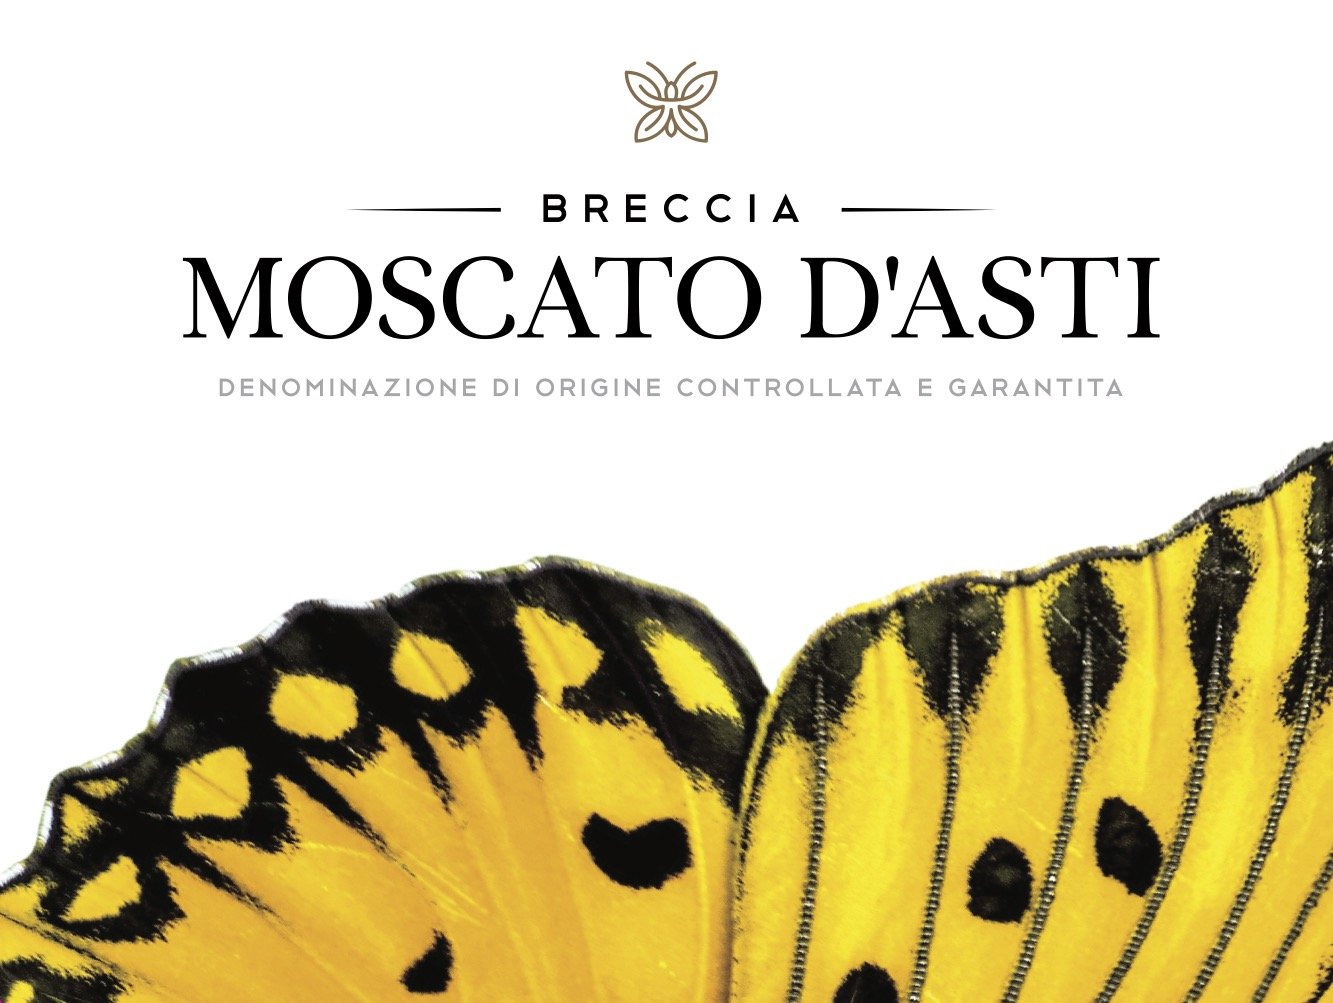 breccia_moscato_dasti_label.jpg